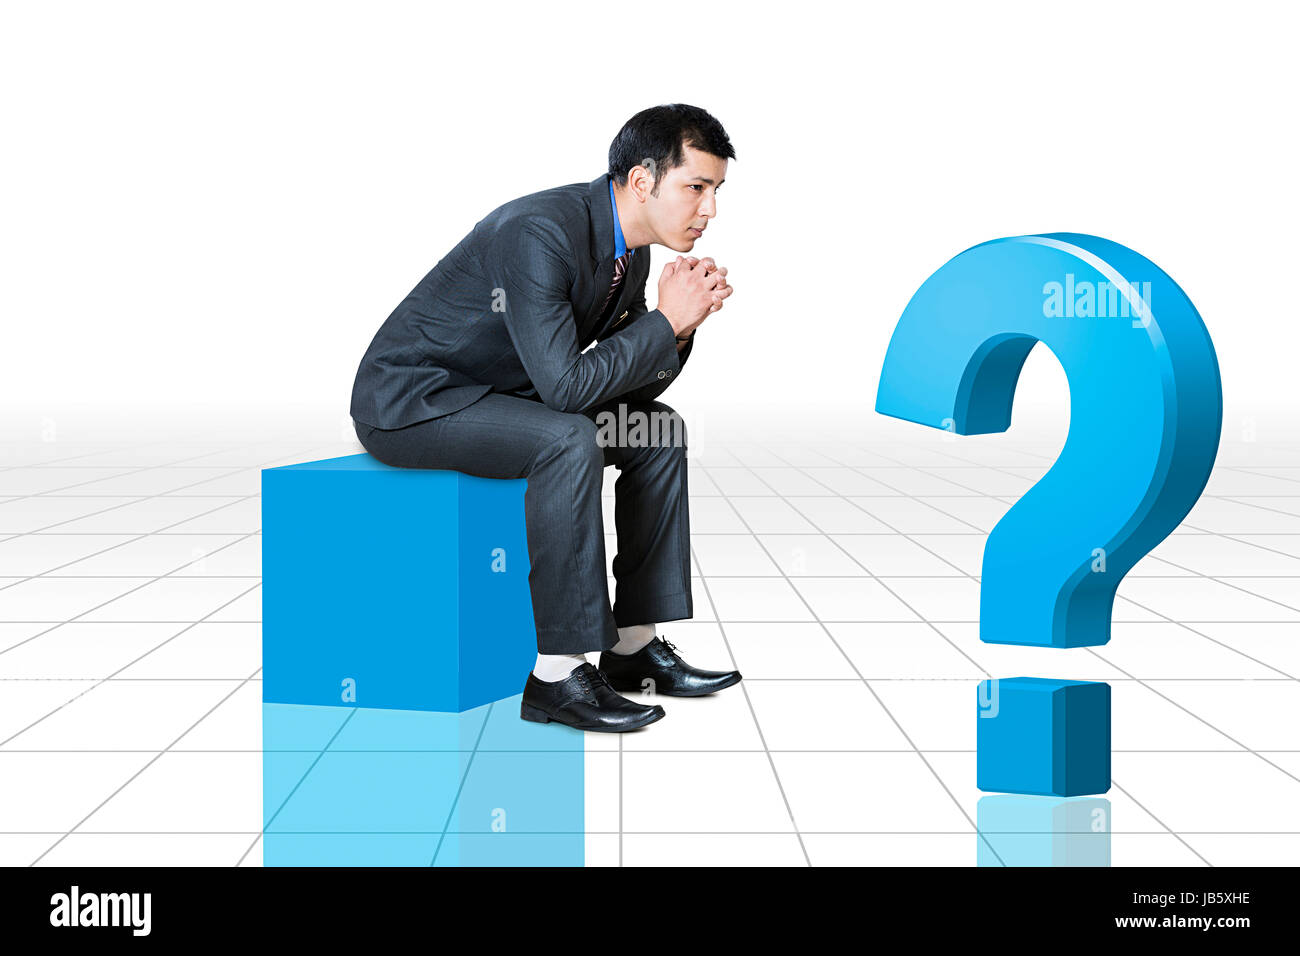 1 empresario indio sentado ilustración de la caja de interrogación pensando confundir la ansiedad Foto de stock